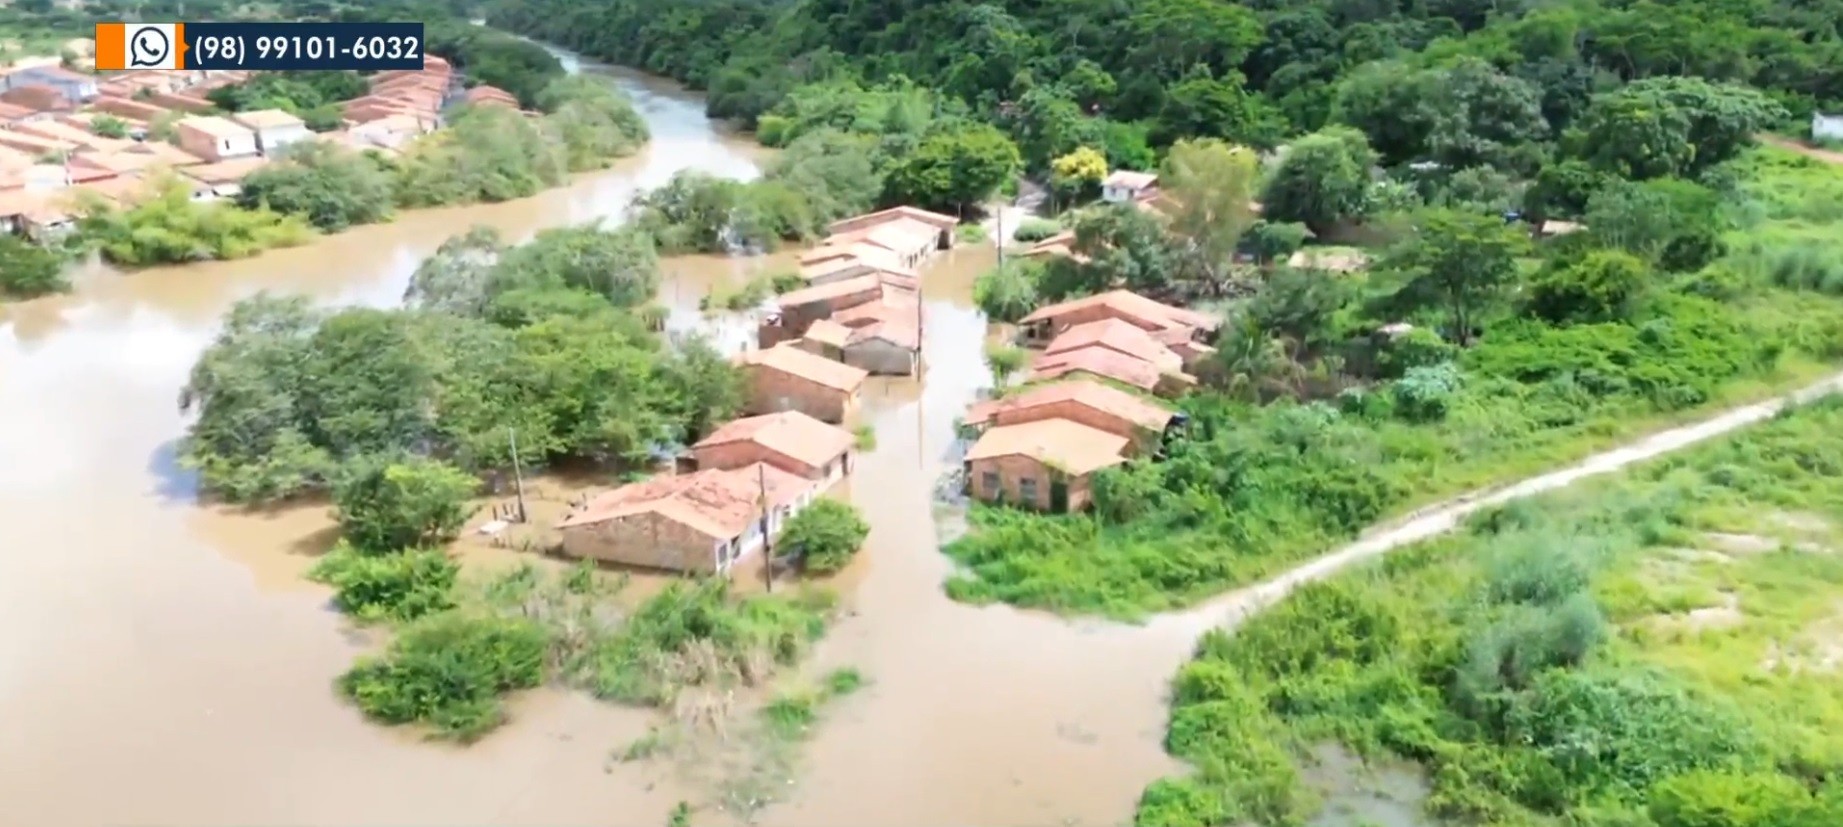 Cheia do Rio Mearim causa alagamento e isola população em Pedreiras, no MA